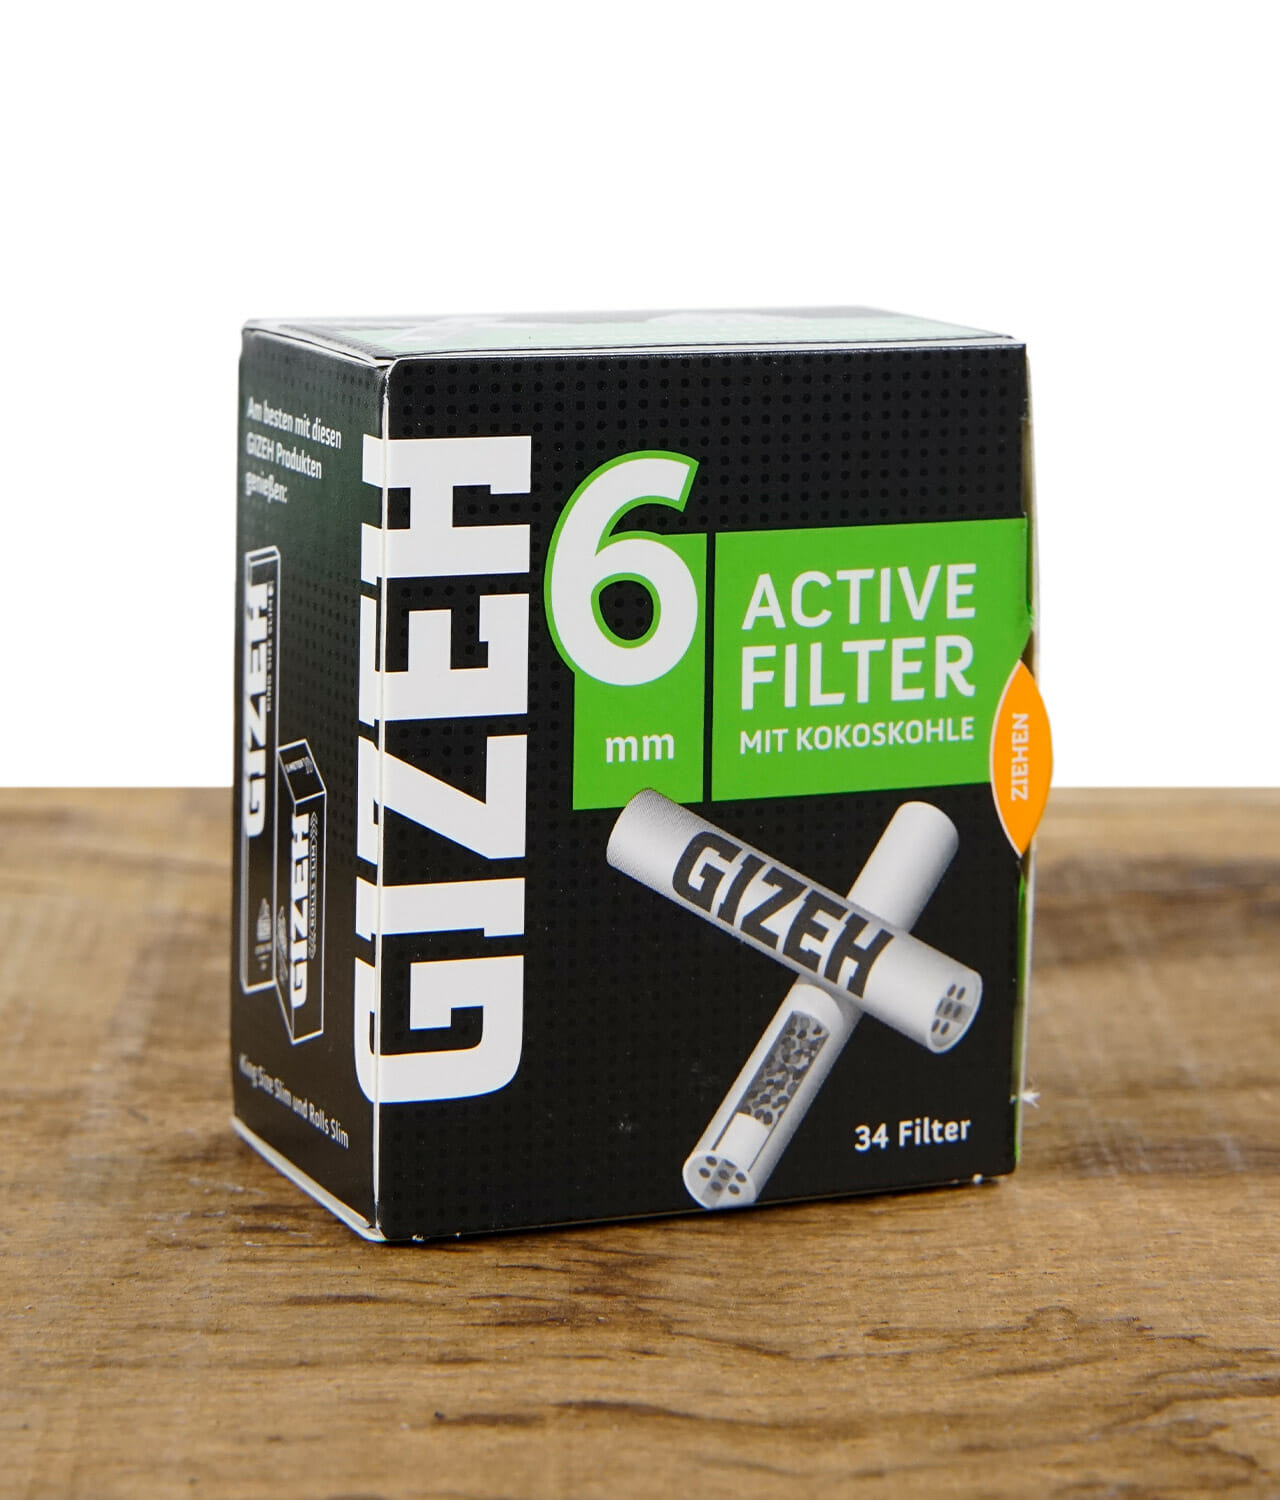 GIZEH BLACK Active Filter 6mm Schachtel - 10x34 Stück - H, 49.90 CHF